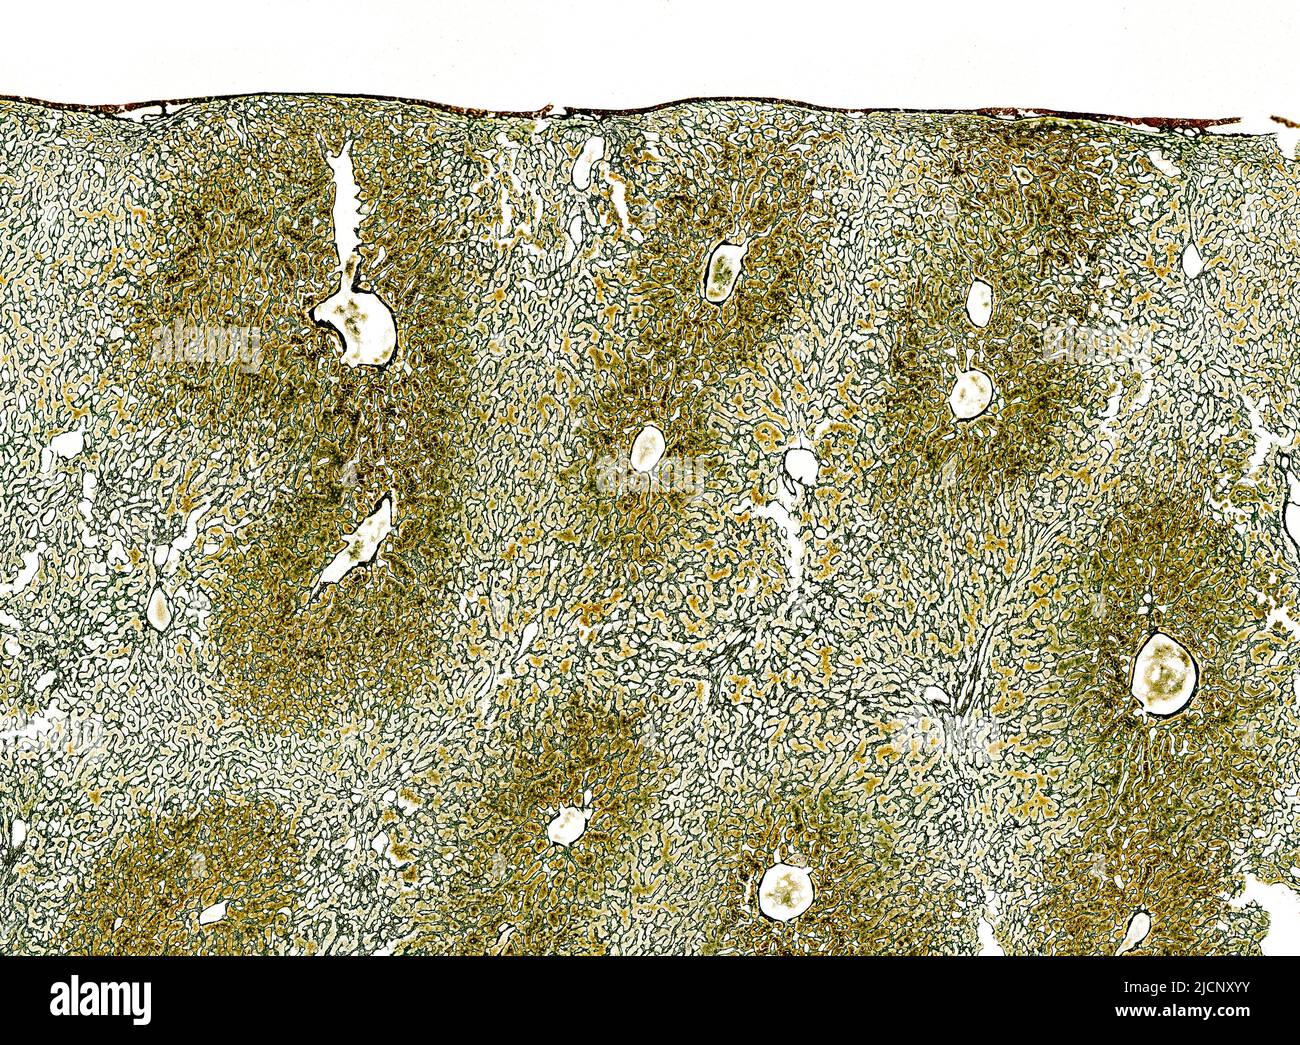 Micrografía ligera de tejidos hepáticos teñidos para mostrar el marco del  tejido conjuntivo que soporta los lobulillos del hígado. Este tejido  conectivo se conoce como fibras reticulares hechas de colágeno tipo III.